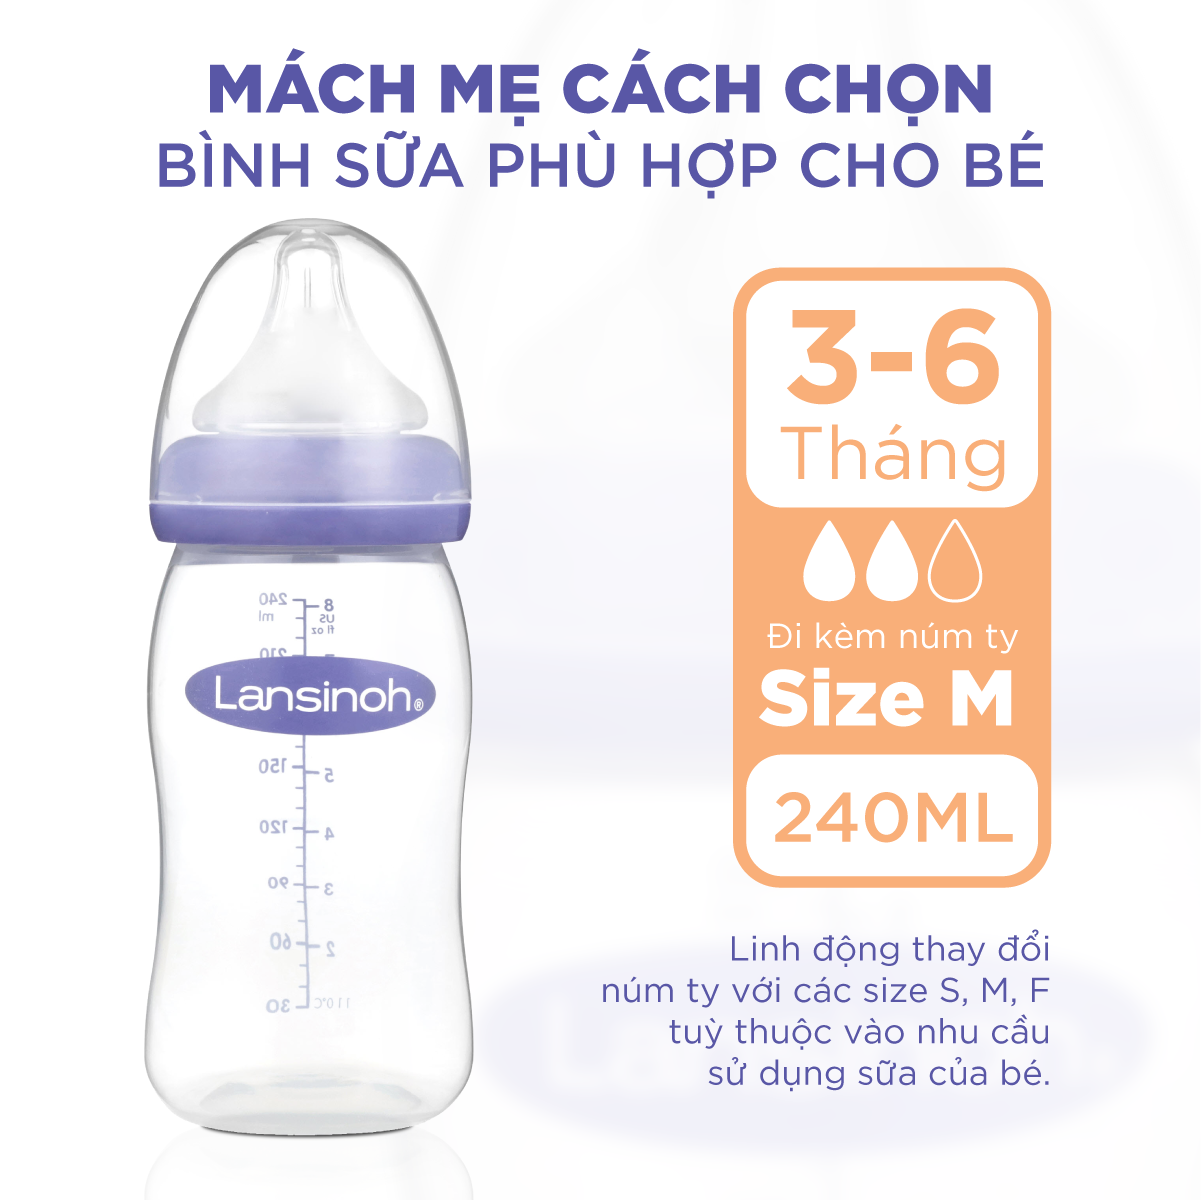 Bộ Đôi Bình Sữa Cổ Rộng Lansinoh Dung Tích 240ml + Núm Ty Size F